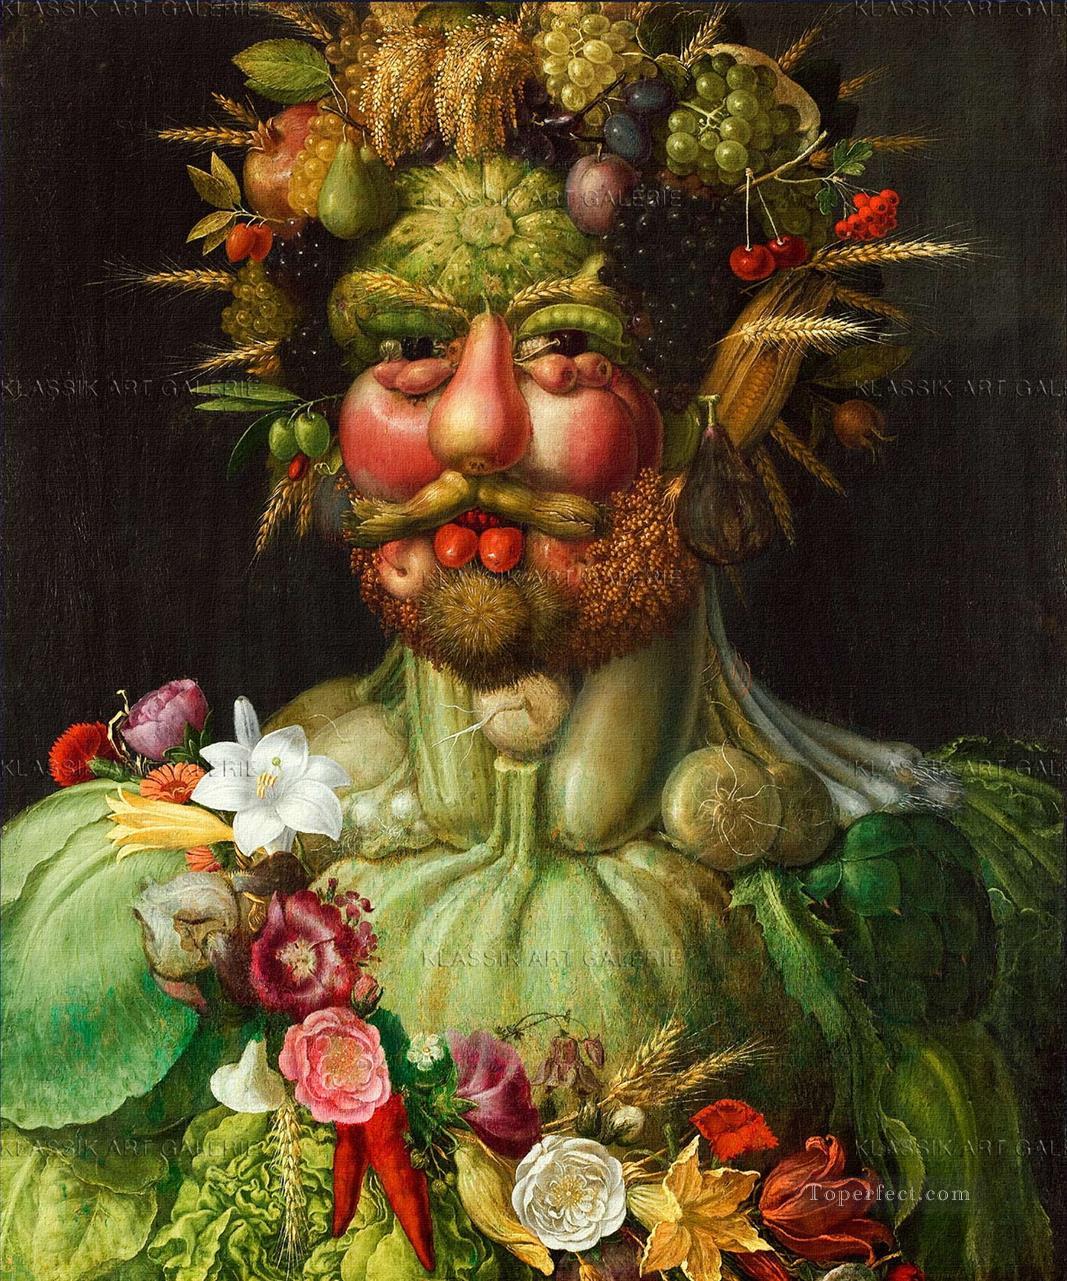 homme de légumes et de fleurs Giuseppe Arcimboldo fantaisie Peintures à l'huile